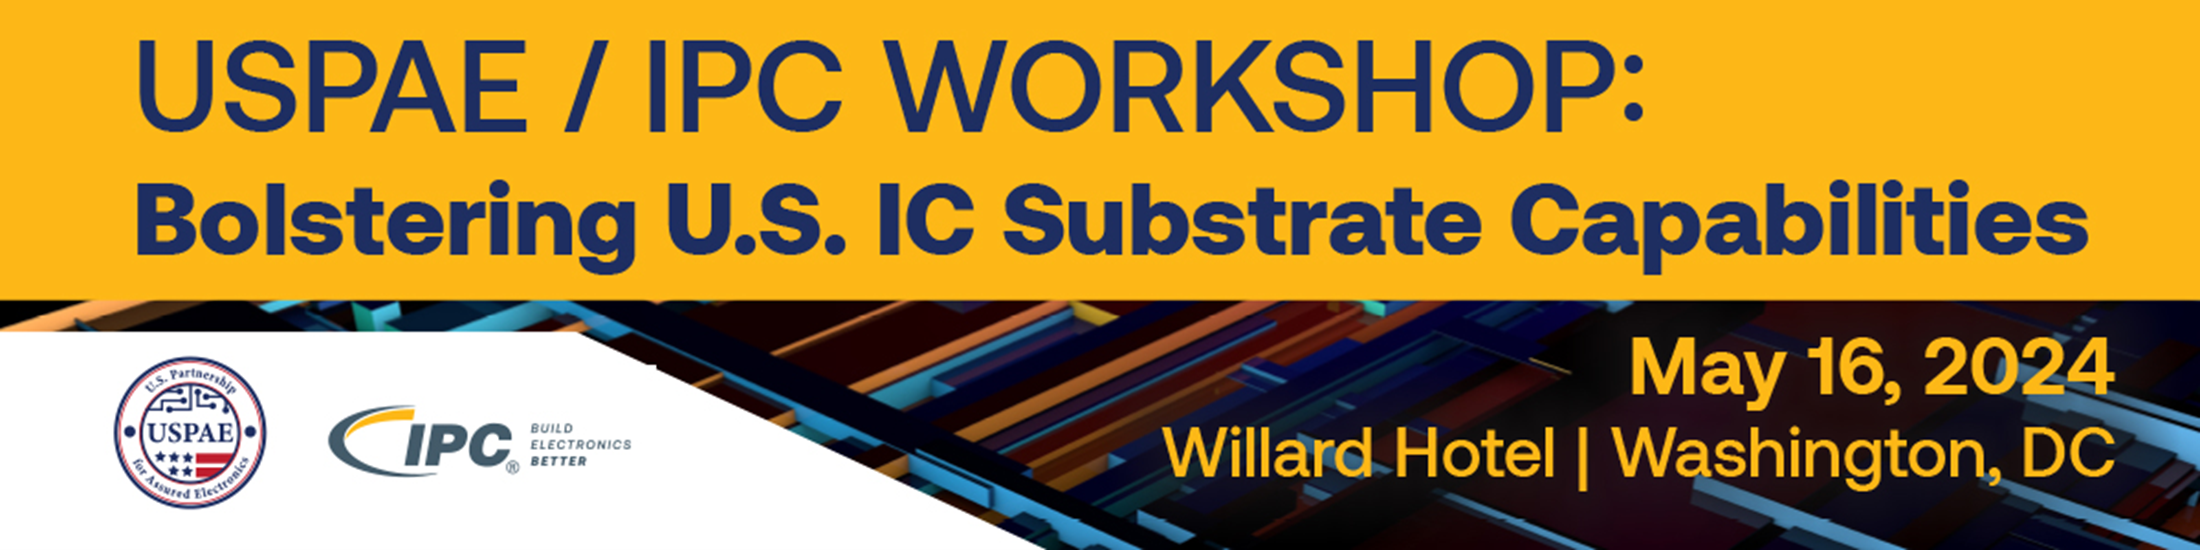 USPAE/IPC workshop header 